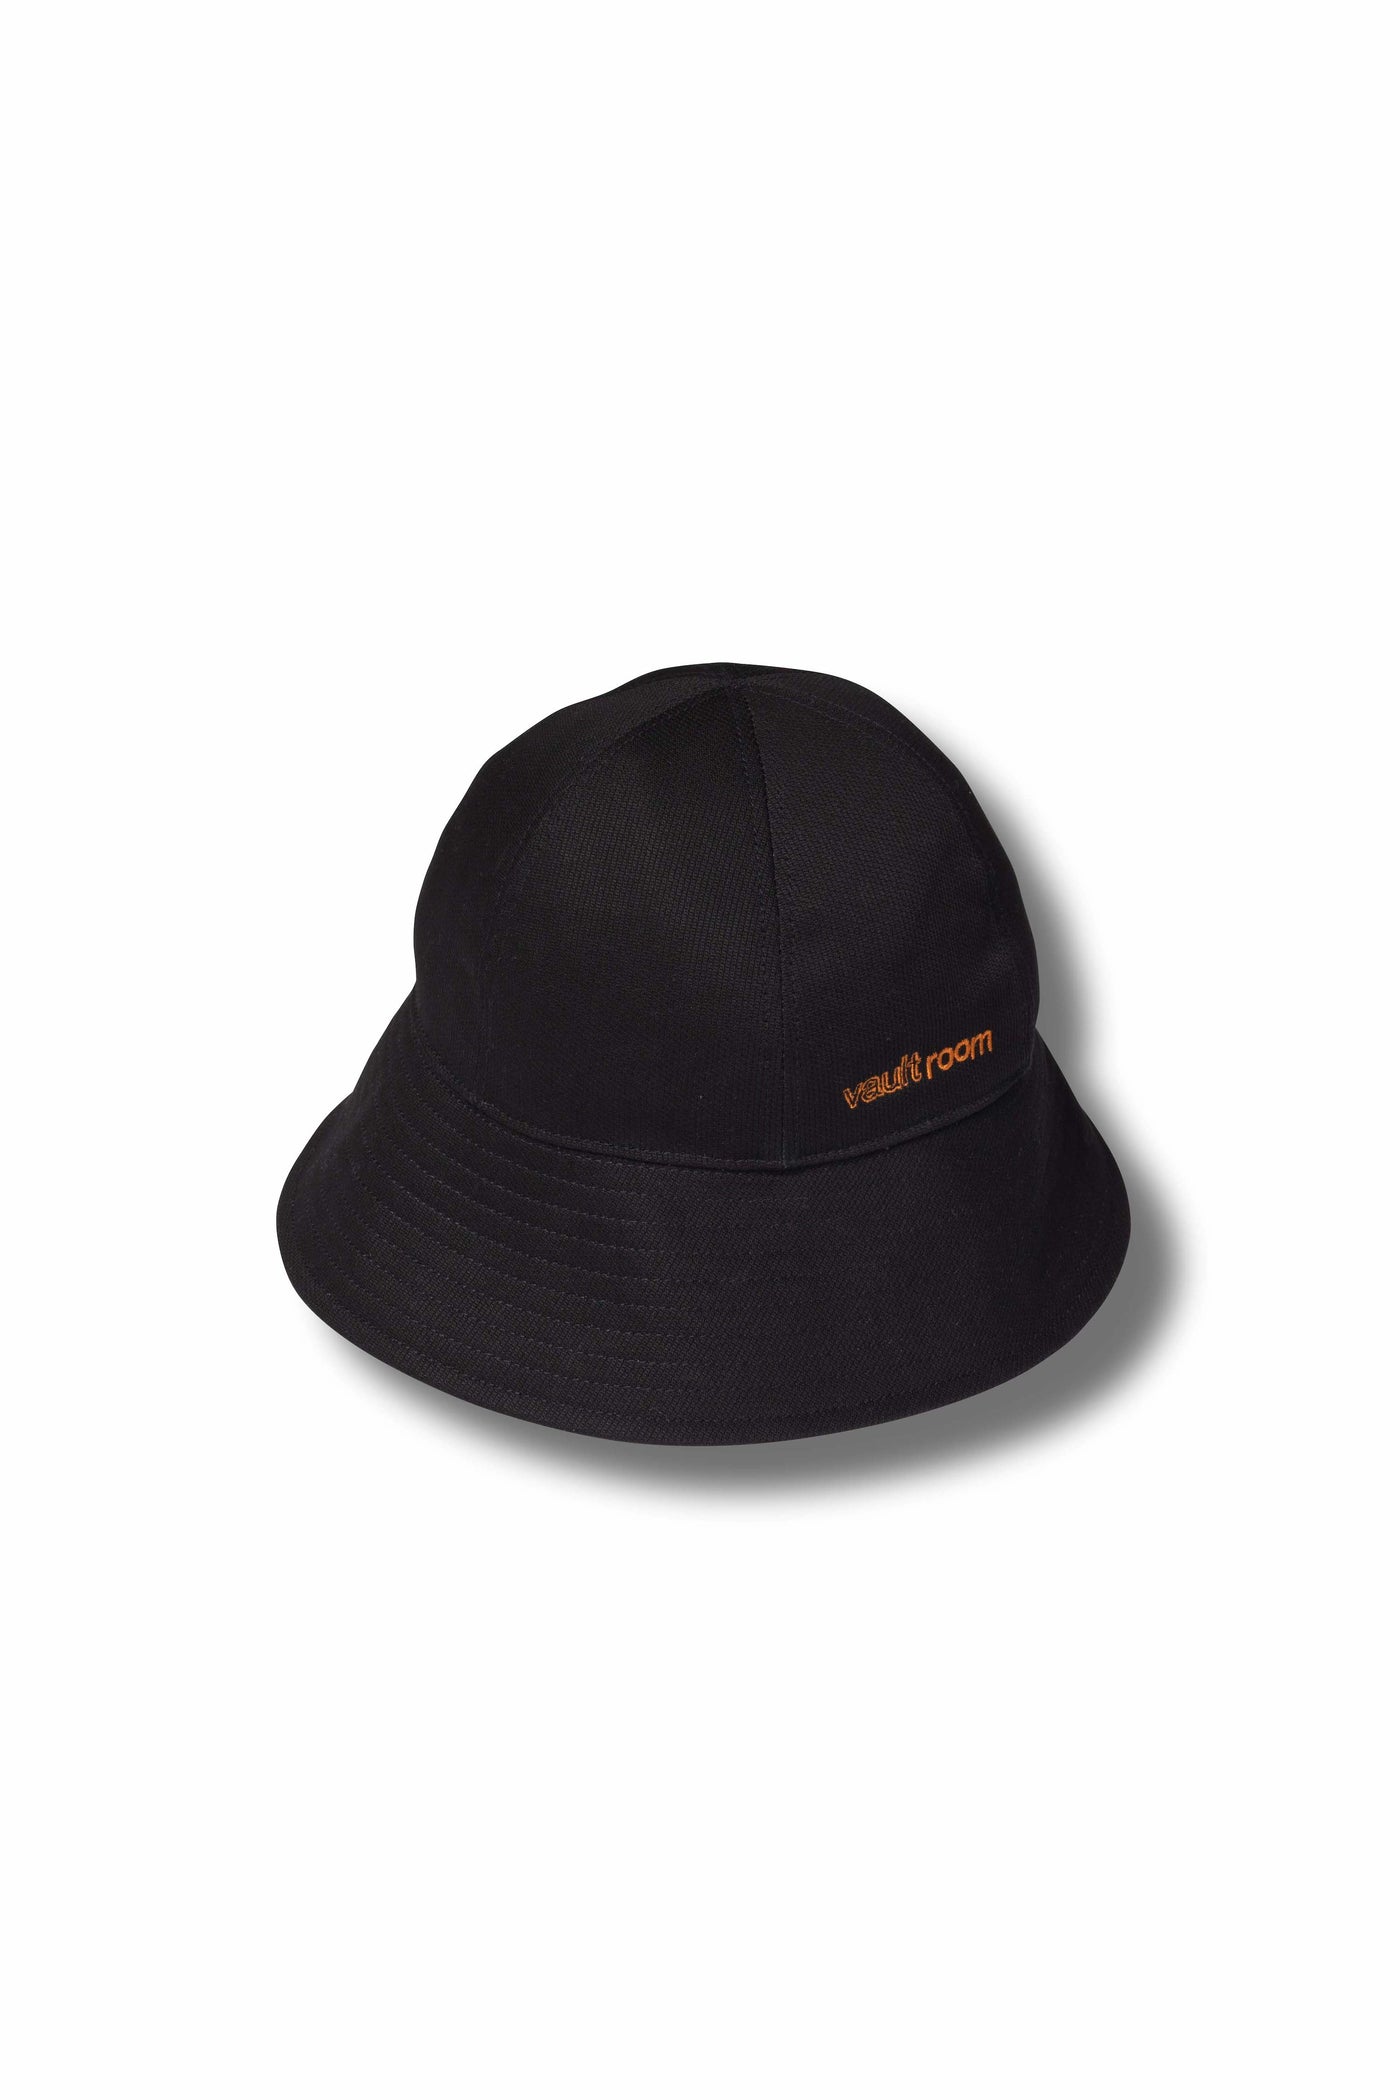 帽子VAULTROOM SAILOR HAT / BLK - ハット